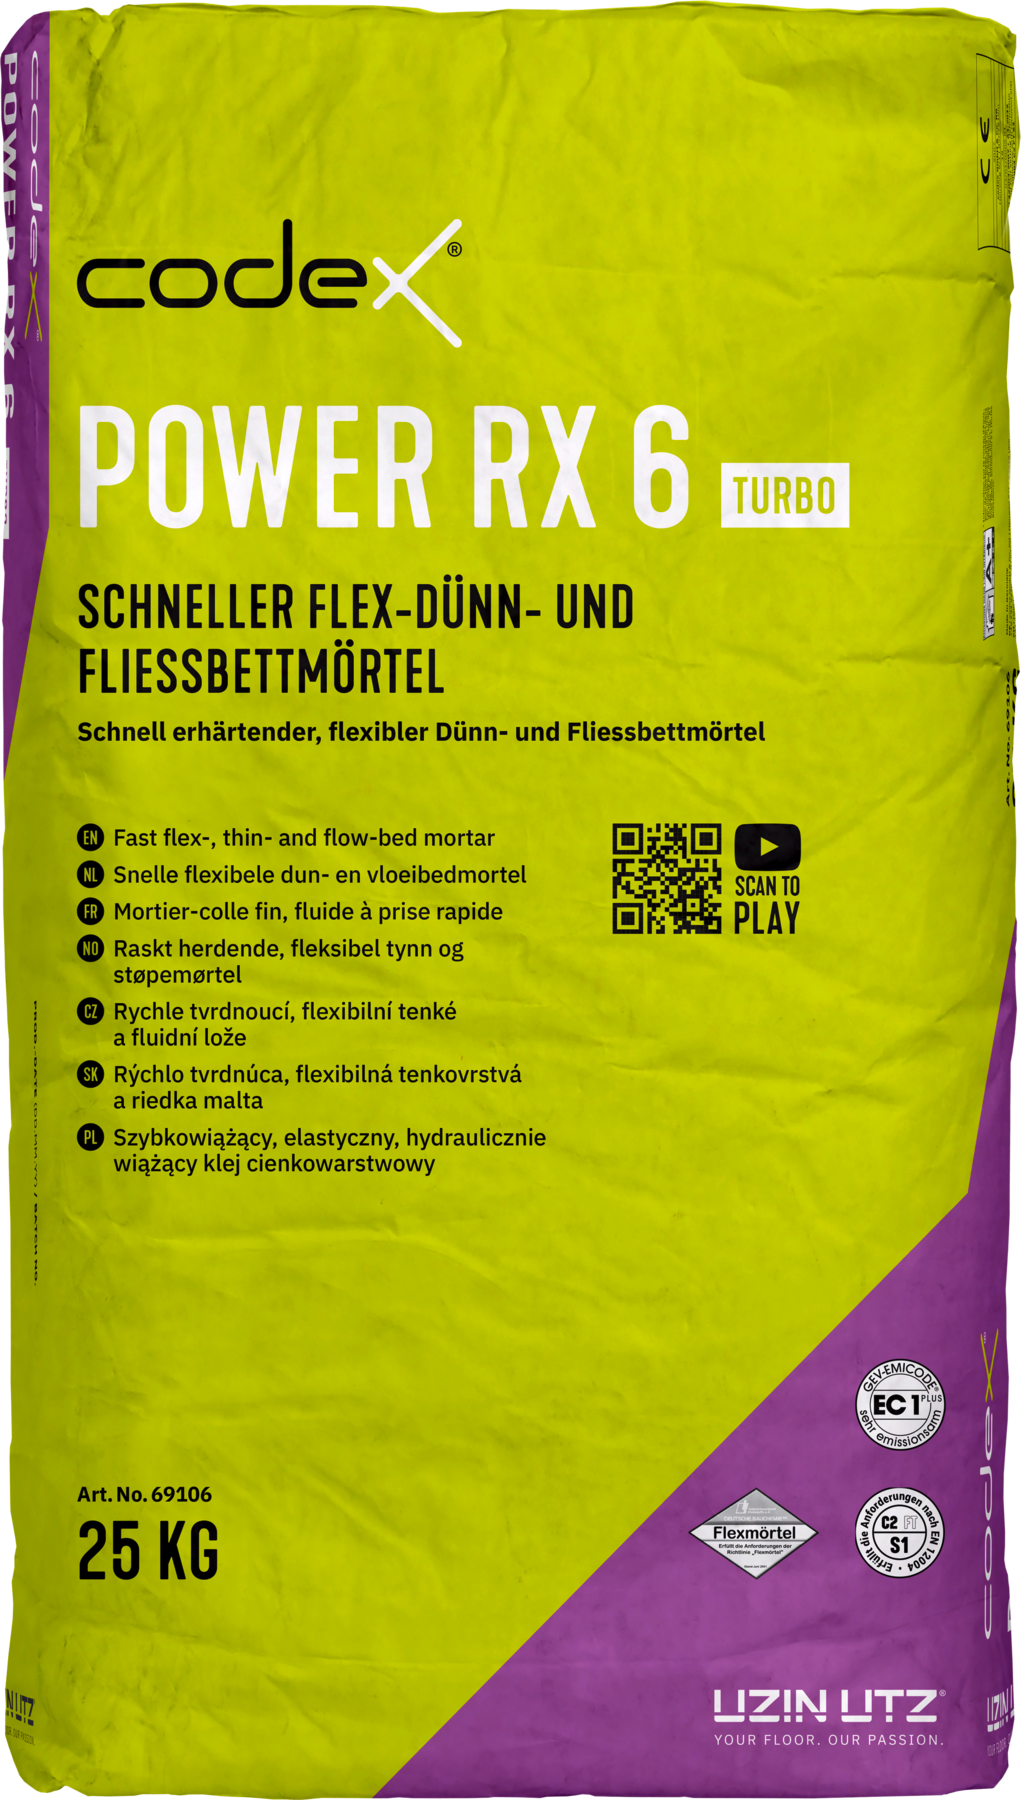 Codex Power RX 6 Turbo 25 kg Flex Dünn und Fließbettmörtel schnell